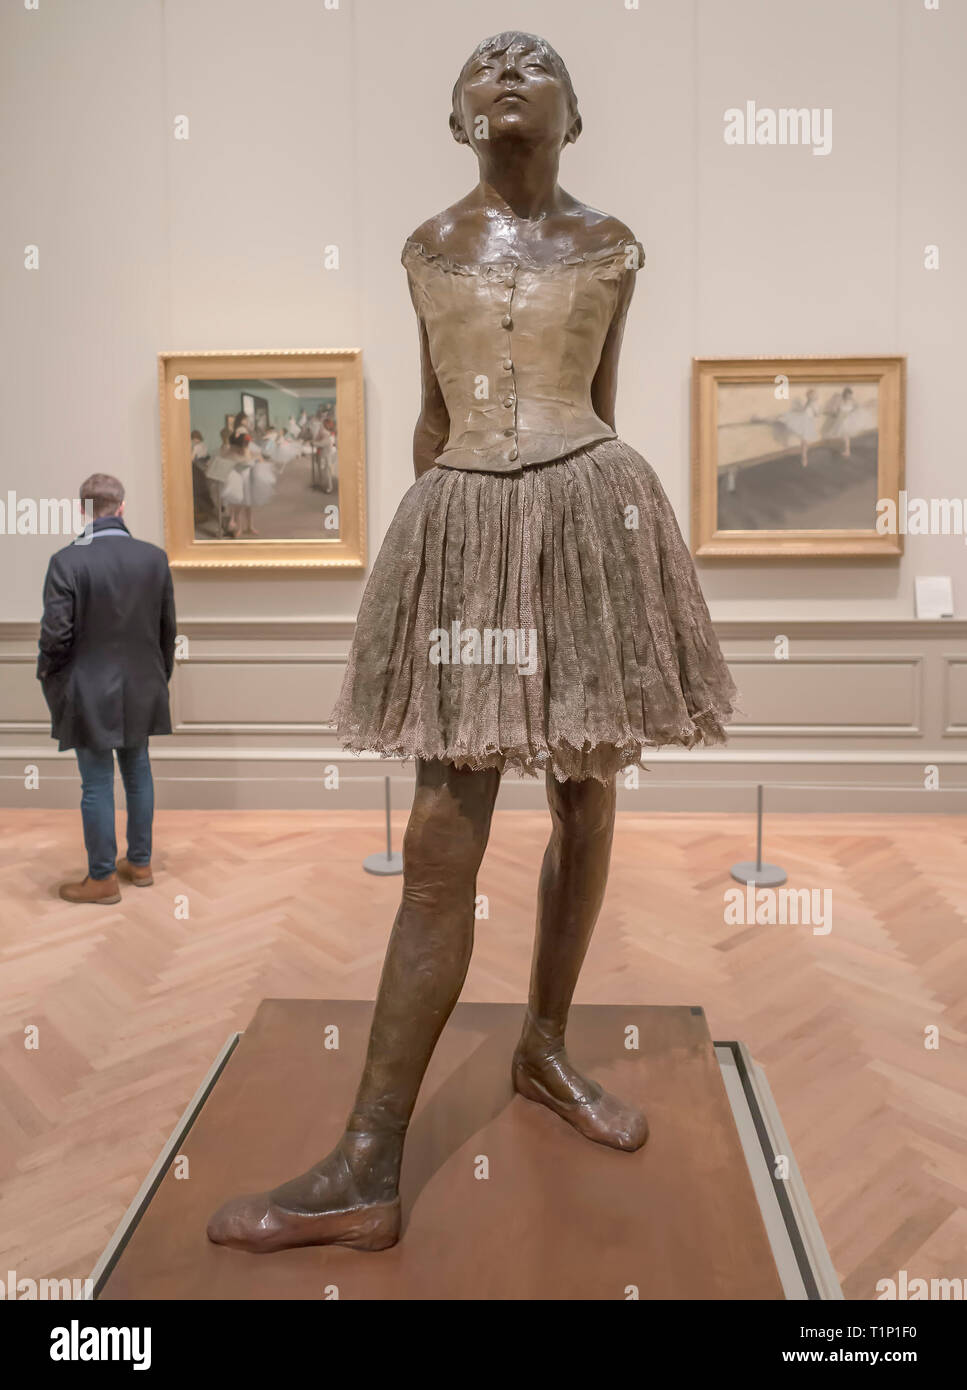 Le petit danseur de quatorze ans par Edgar Degas dans le Metropolitan Museum of Art de New York Banque D'Images